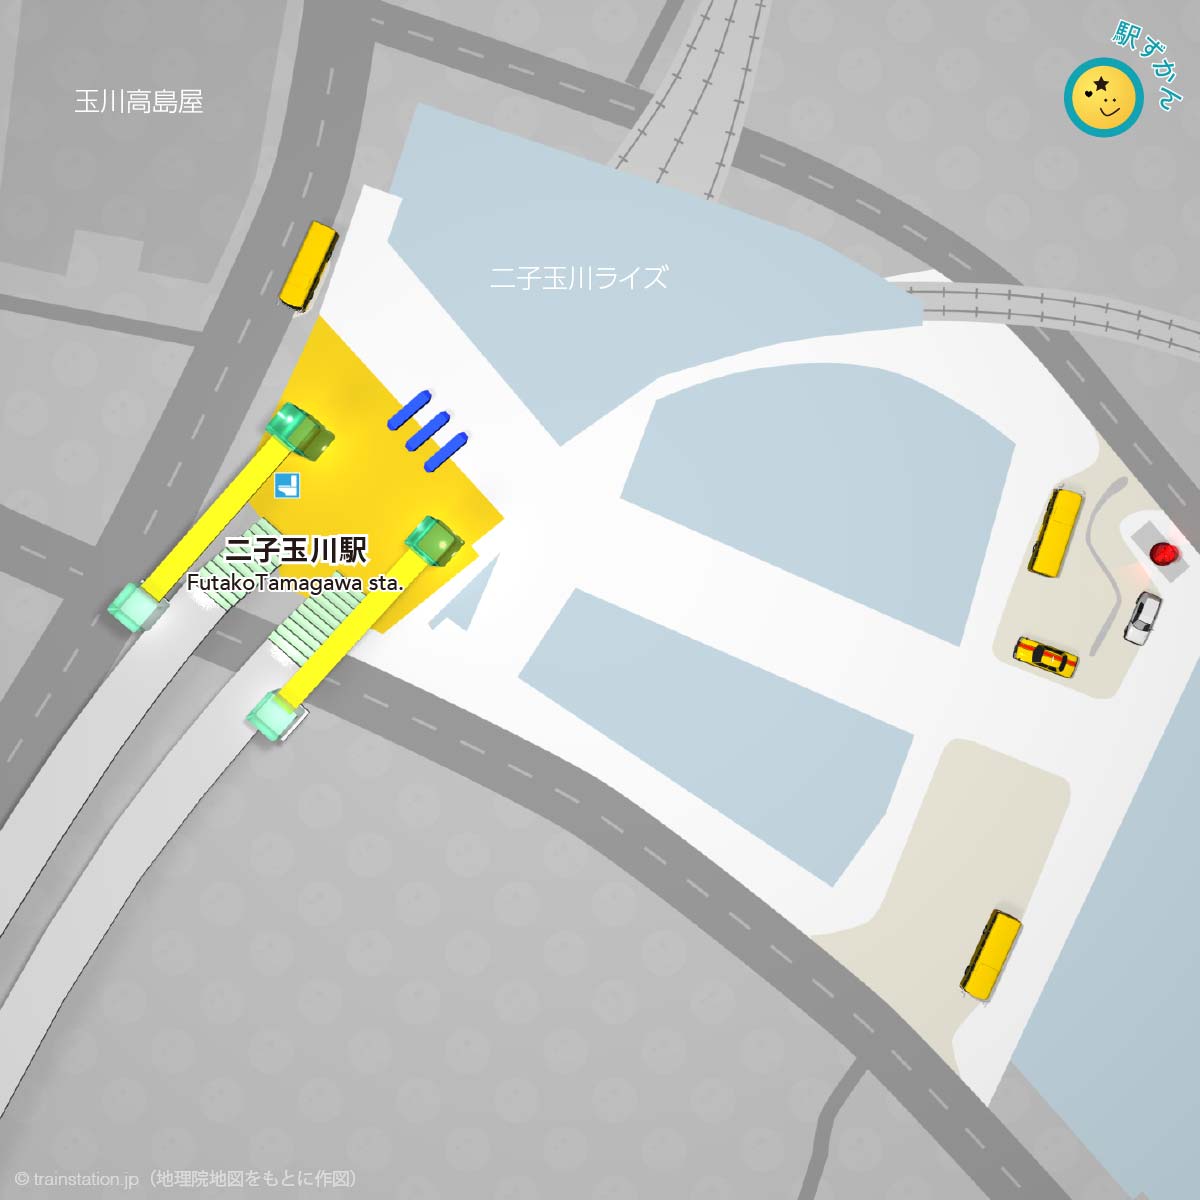 二子玉川駅構内図と周辺マップ